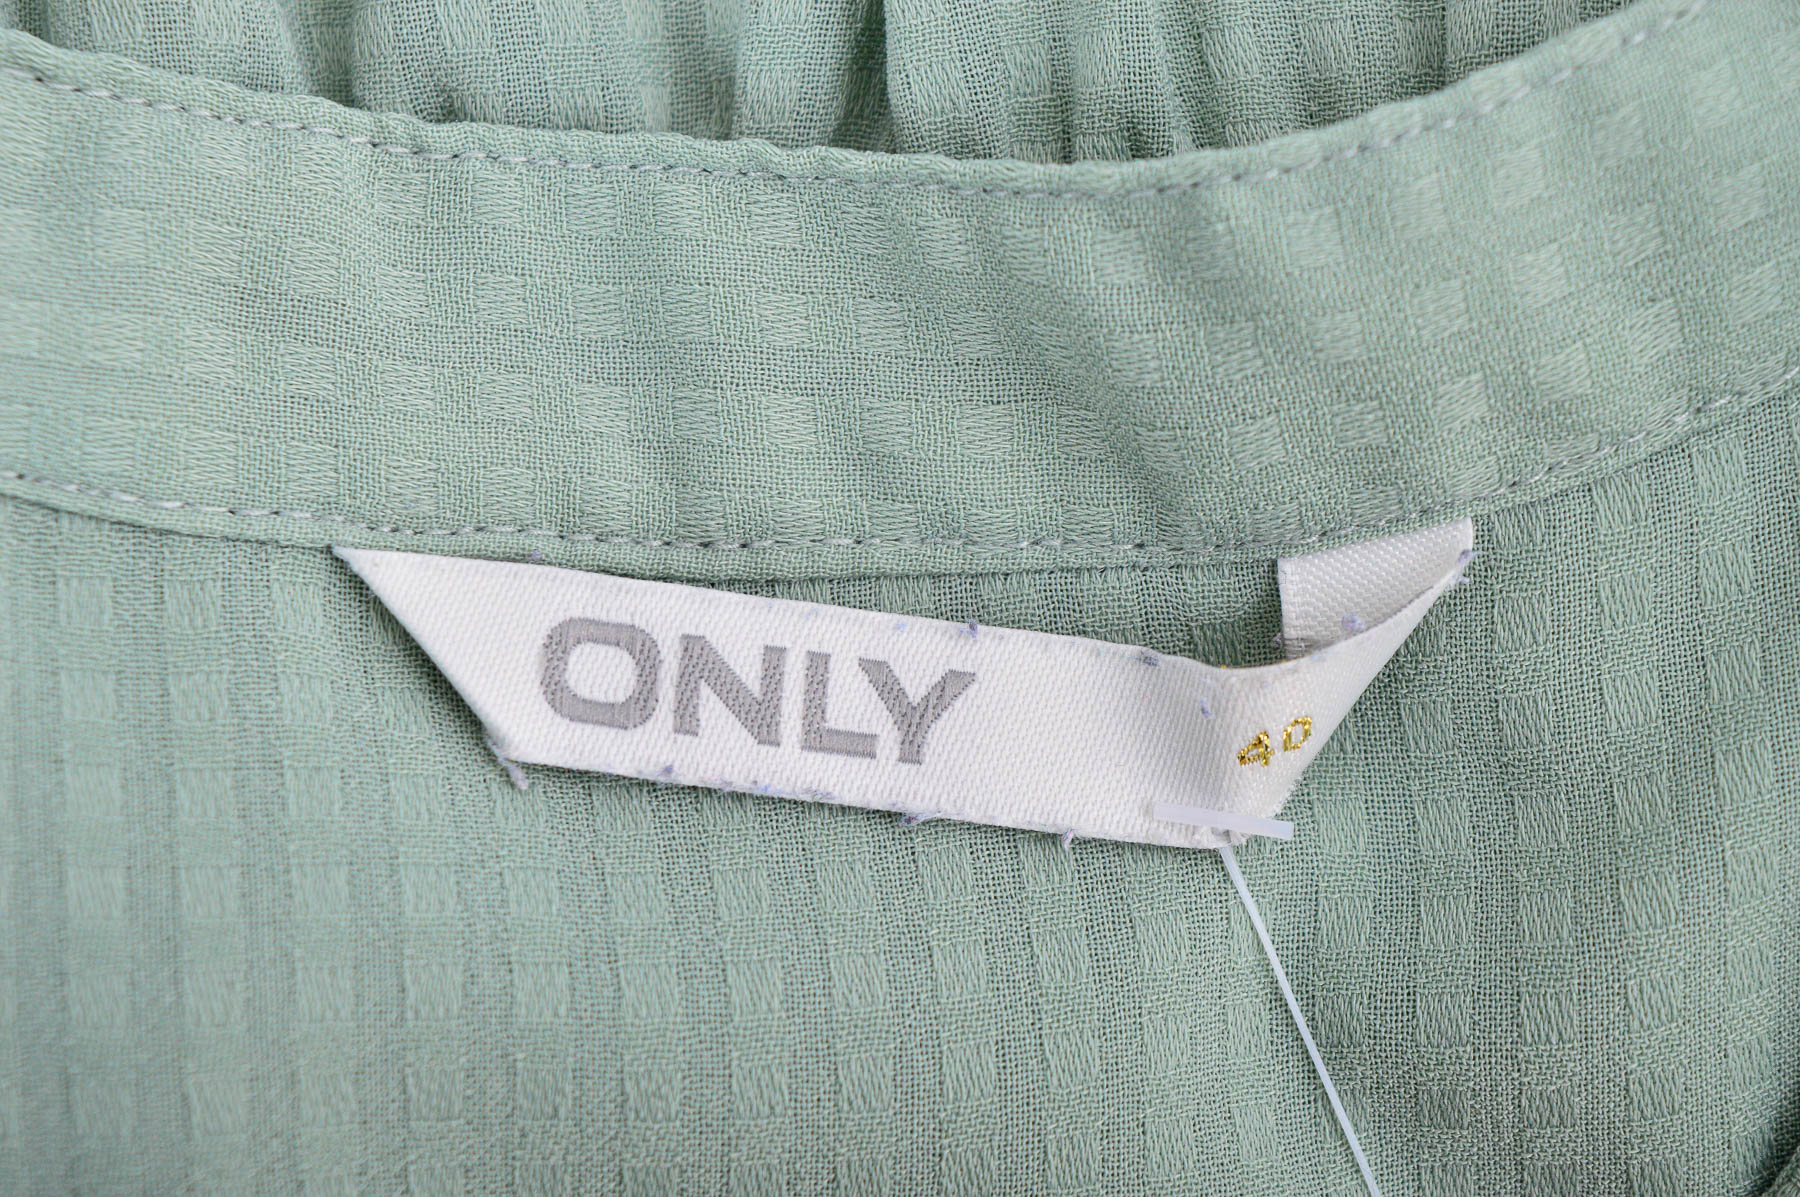 Women's shirt - ONLY - 2